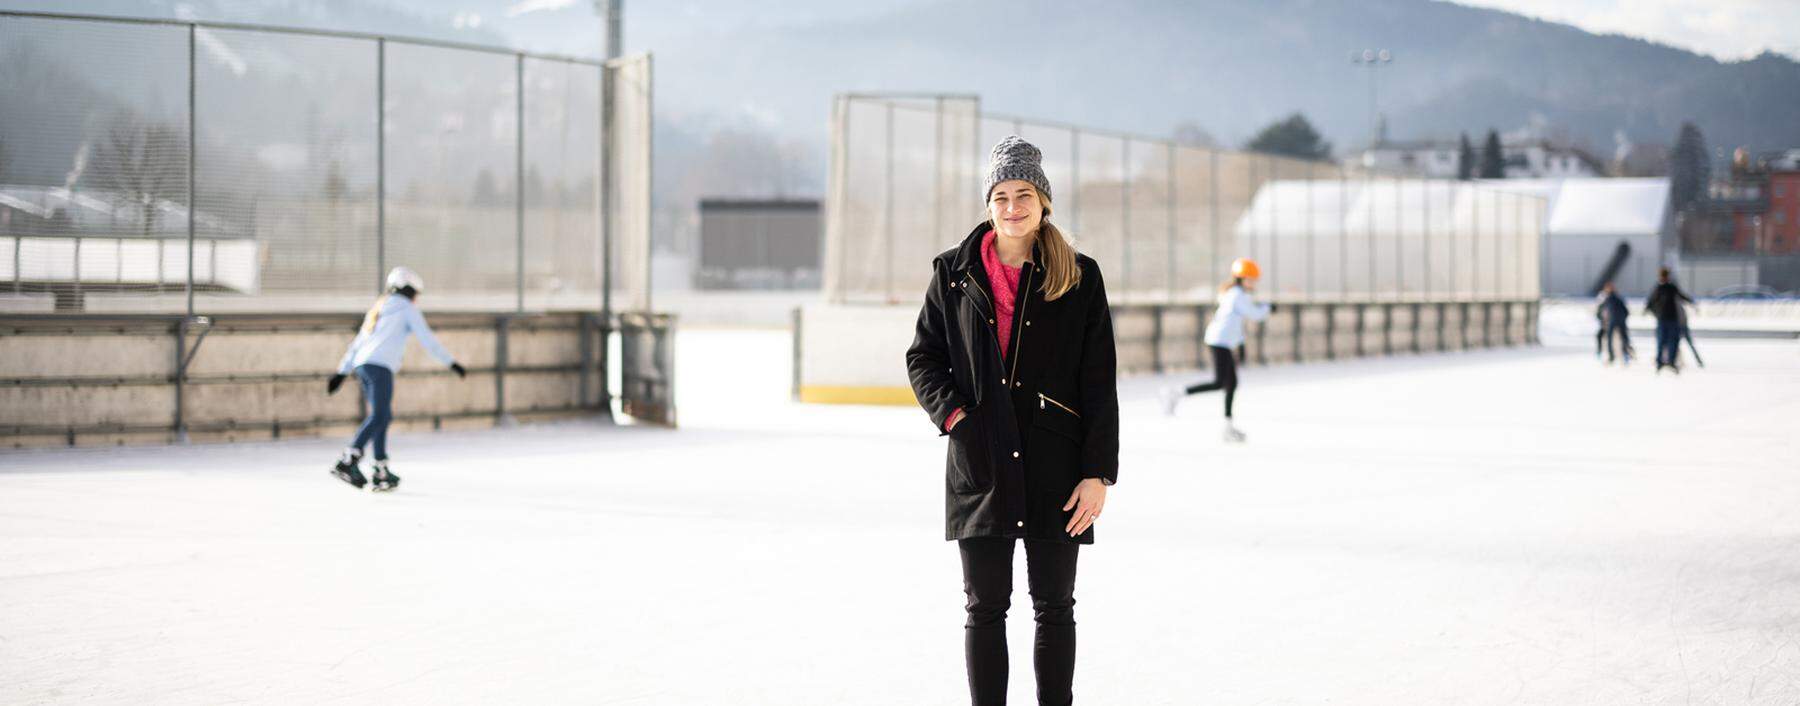 Über Weihnachten besucht Janine Weber ihre Familie in Innsbruck. Hier begann einst ihr Eishockey-Abenteuer, das sie 2015 in die National Women's Hockey League führen sollte.